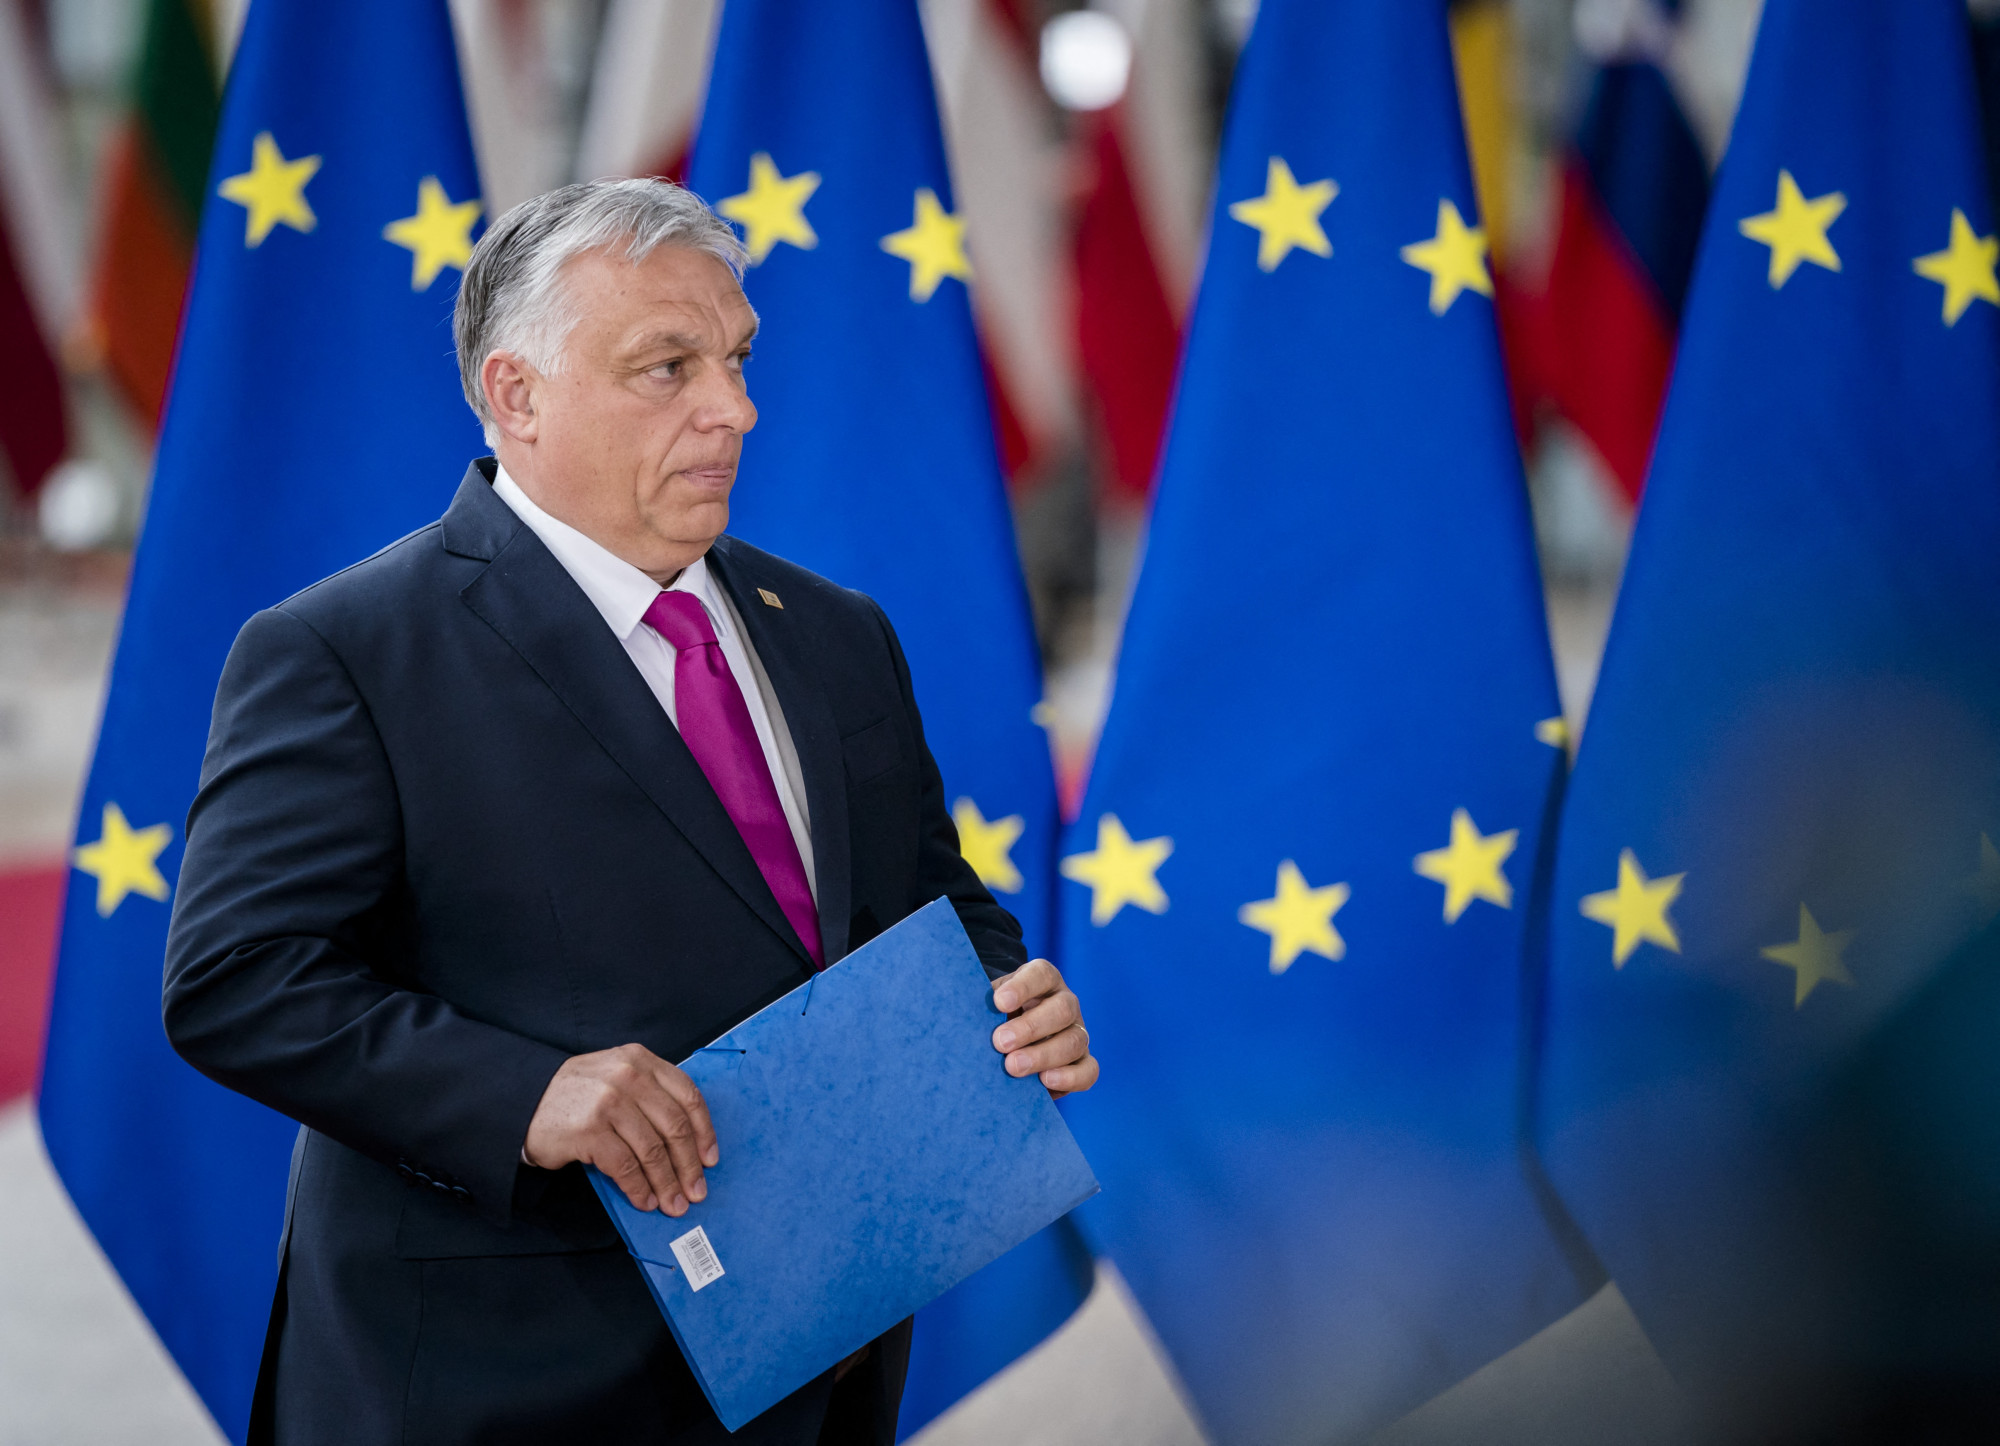 Teljes körű ellenőrzési eljárás alá vonja Magyarországot az Európa Tanács jogállamisági és demokráciaügyi kérdésekben